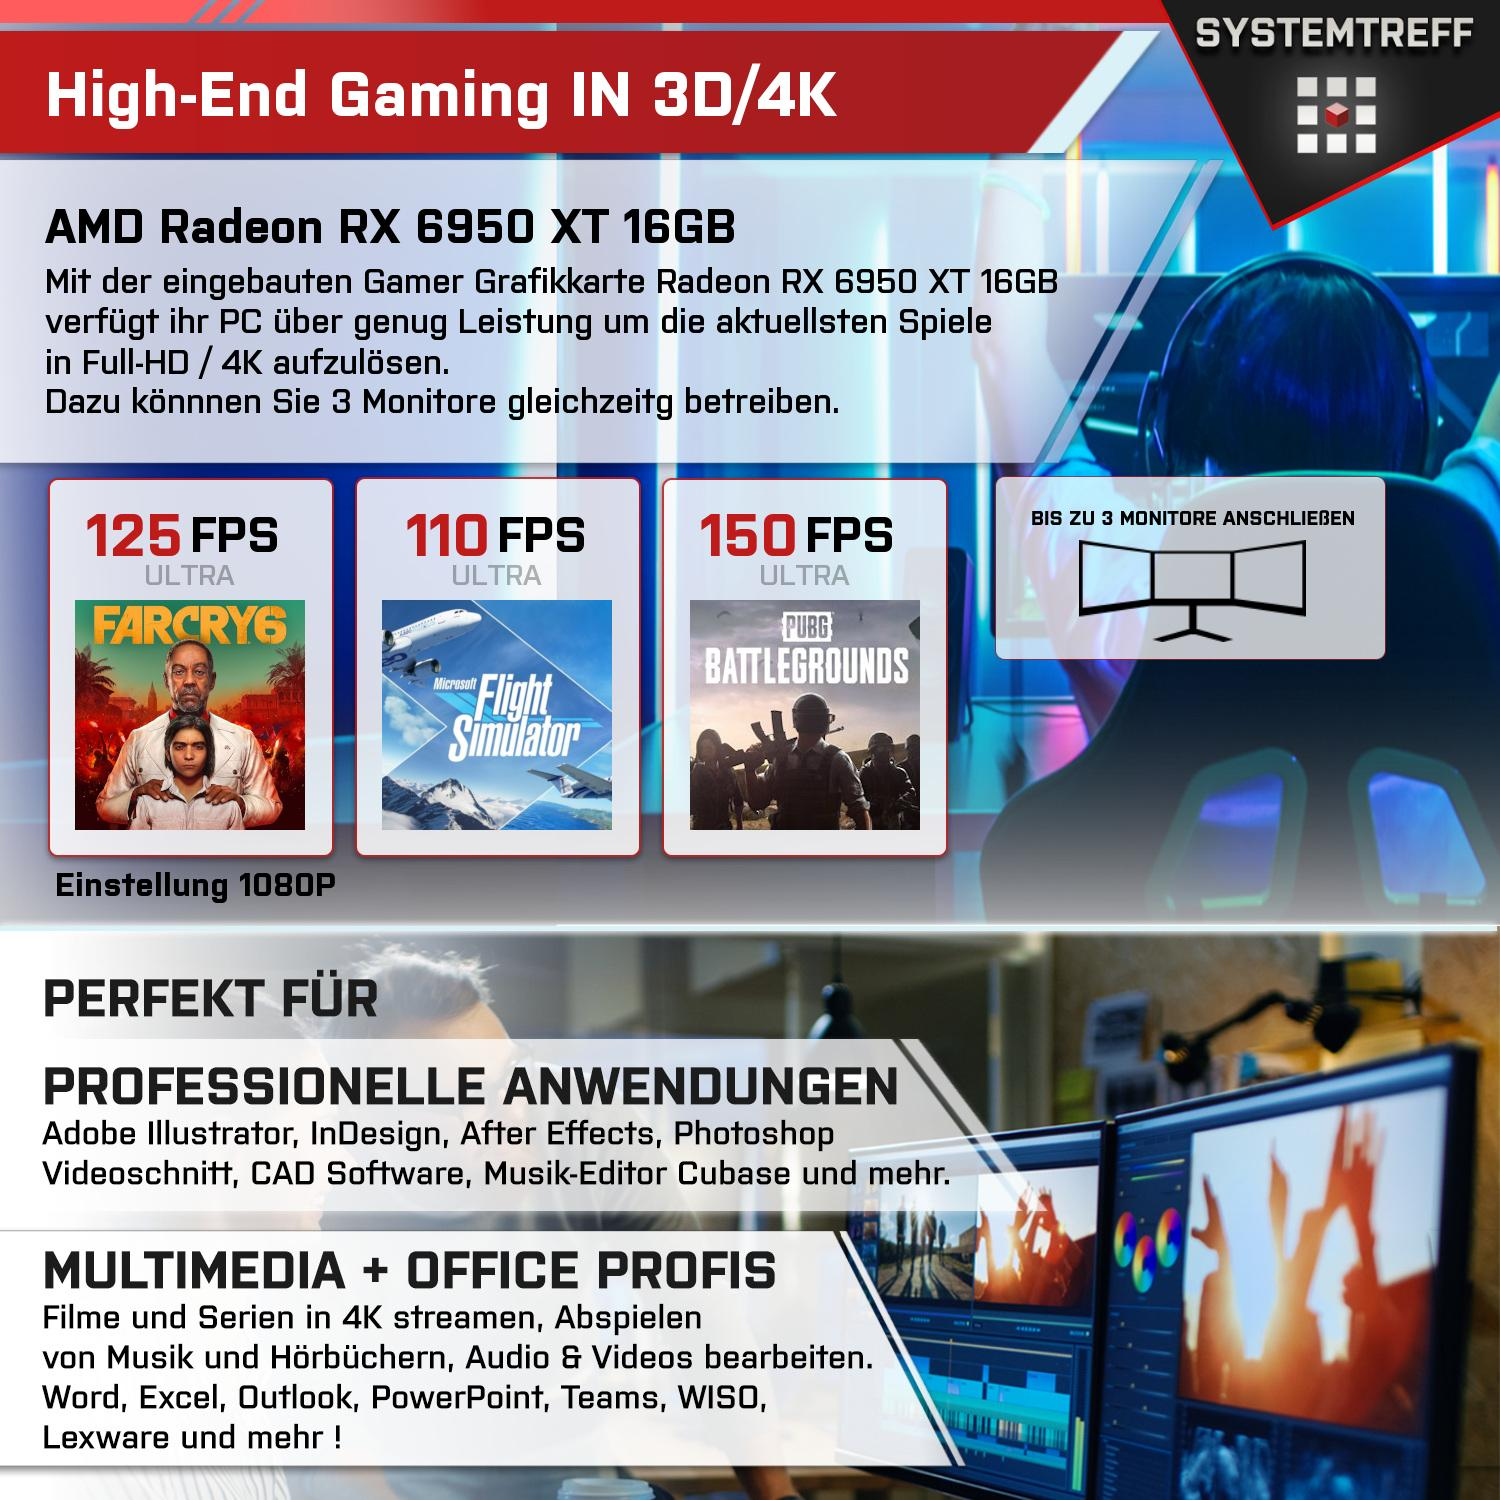 SYSTEMTREFF Gaming Komplett AMD Ryzen AMD XT GB 1000 mSSD, GB PC GDDR6, 32 Prozessor, Radeon mit 6950 RX 5900X, RAM, 5900X 9 16GB 16 GB Komplett